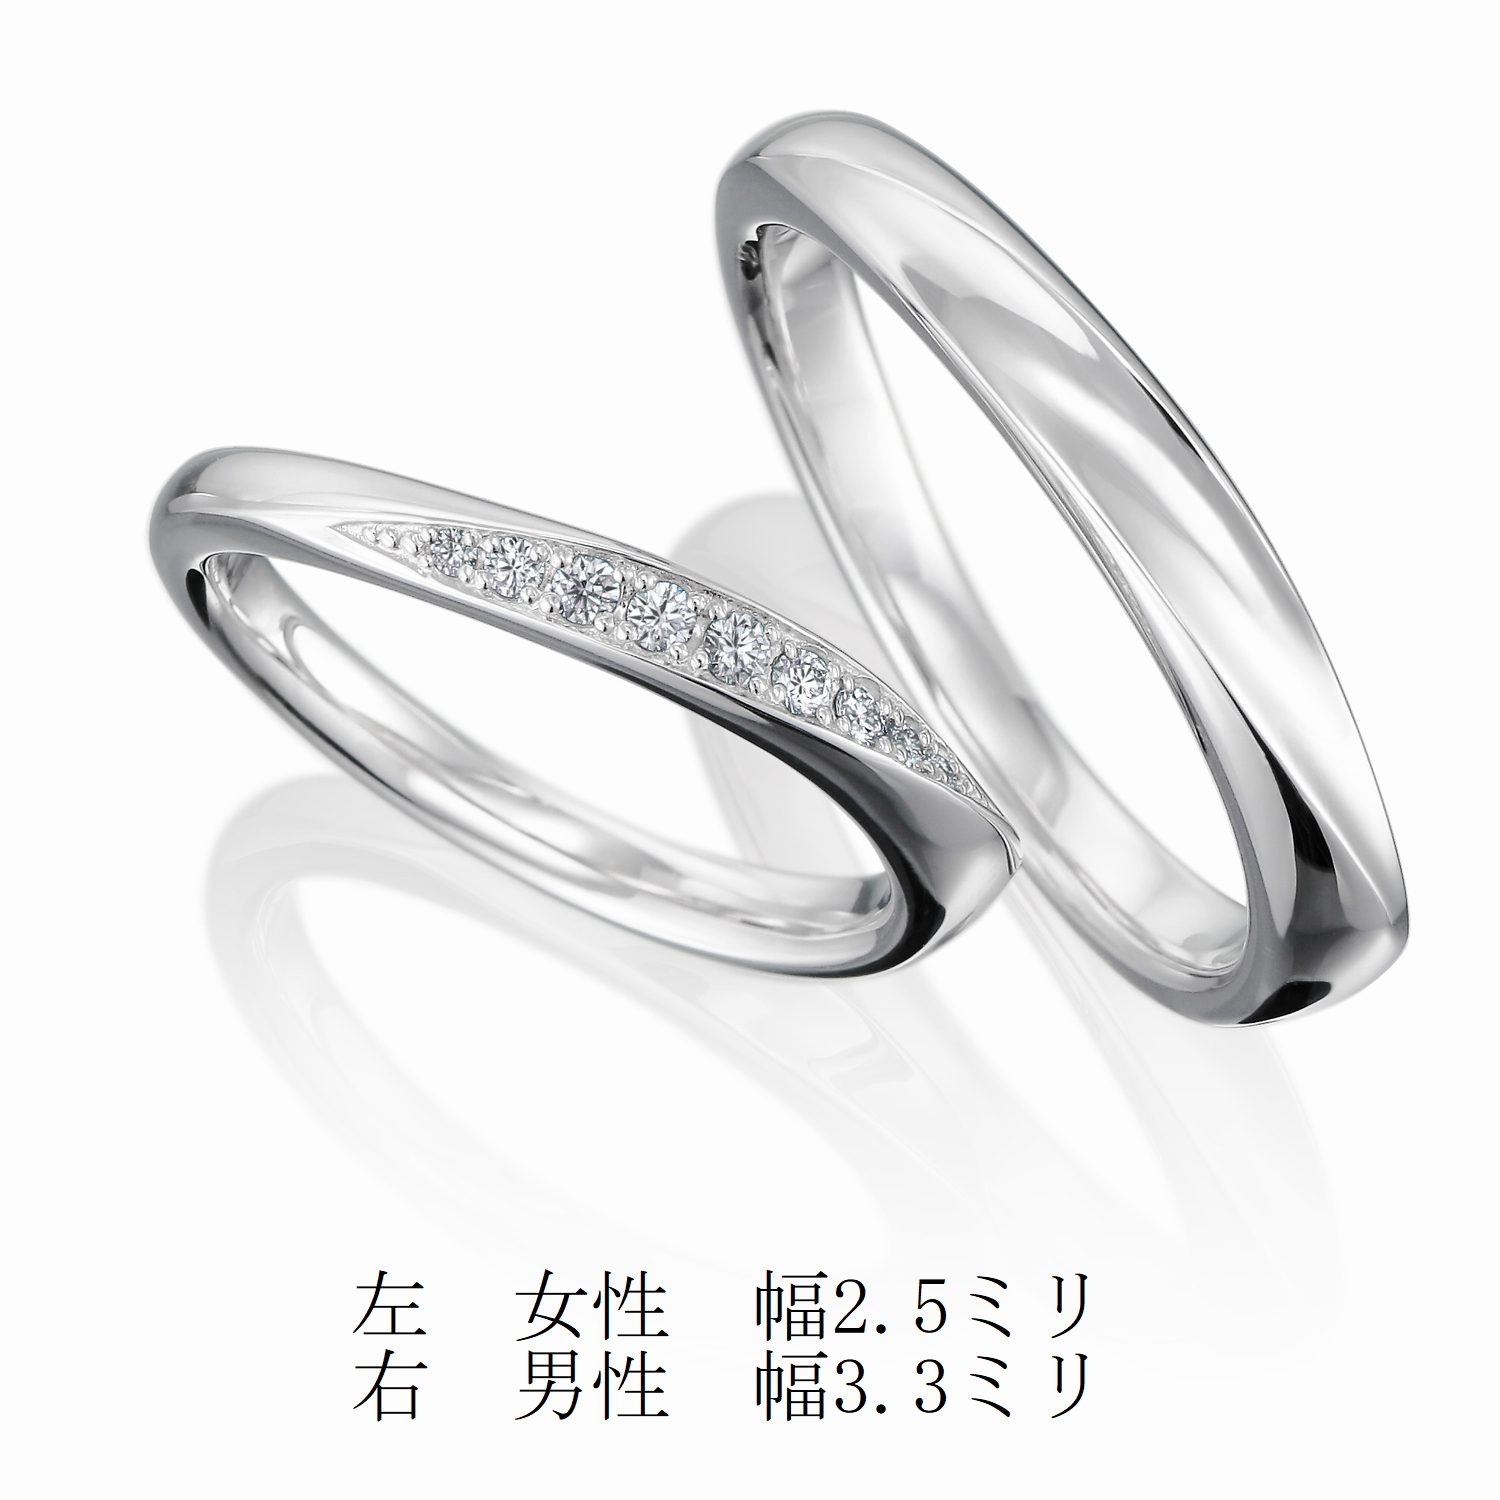 結婚指輪No3 2.5 ダイヤモンド プラチナ(幅2.5mm / Pt950) ウェーブ